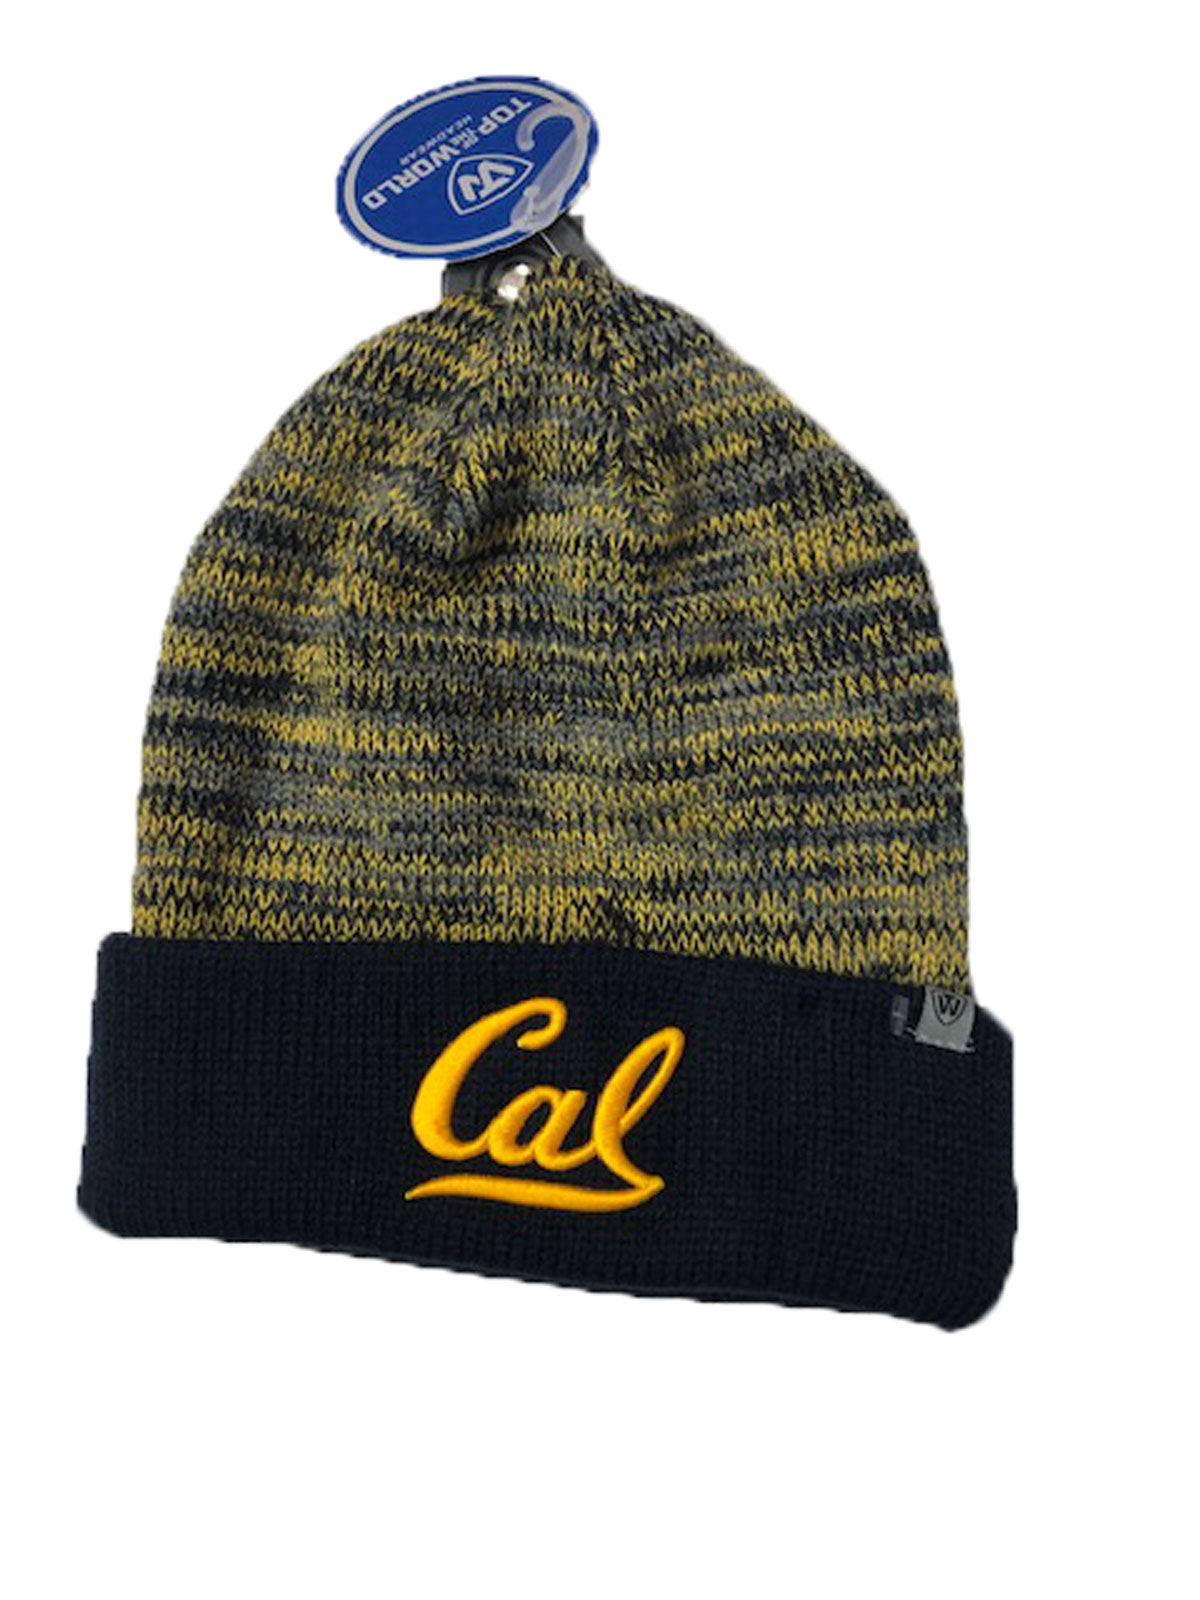 U.C. Berkeley Cal multi color tweed beanie hat-Navy-Shop College Wear